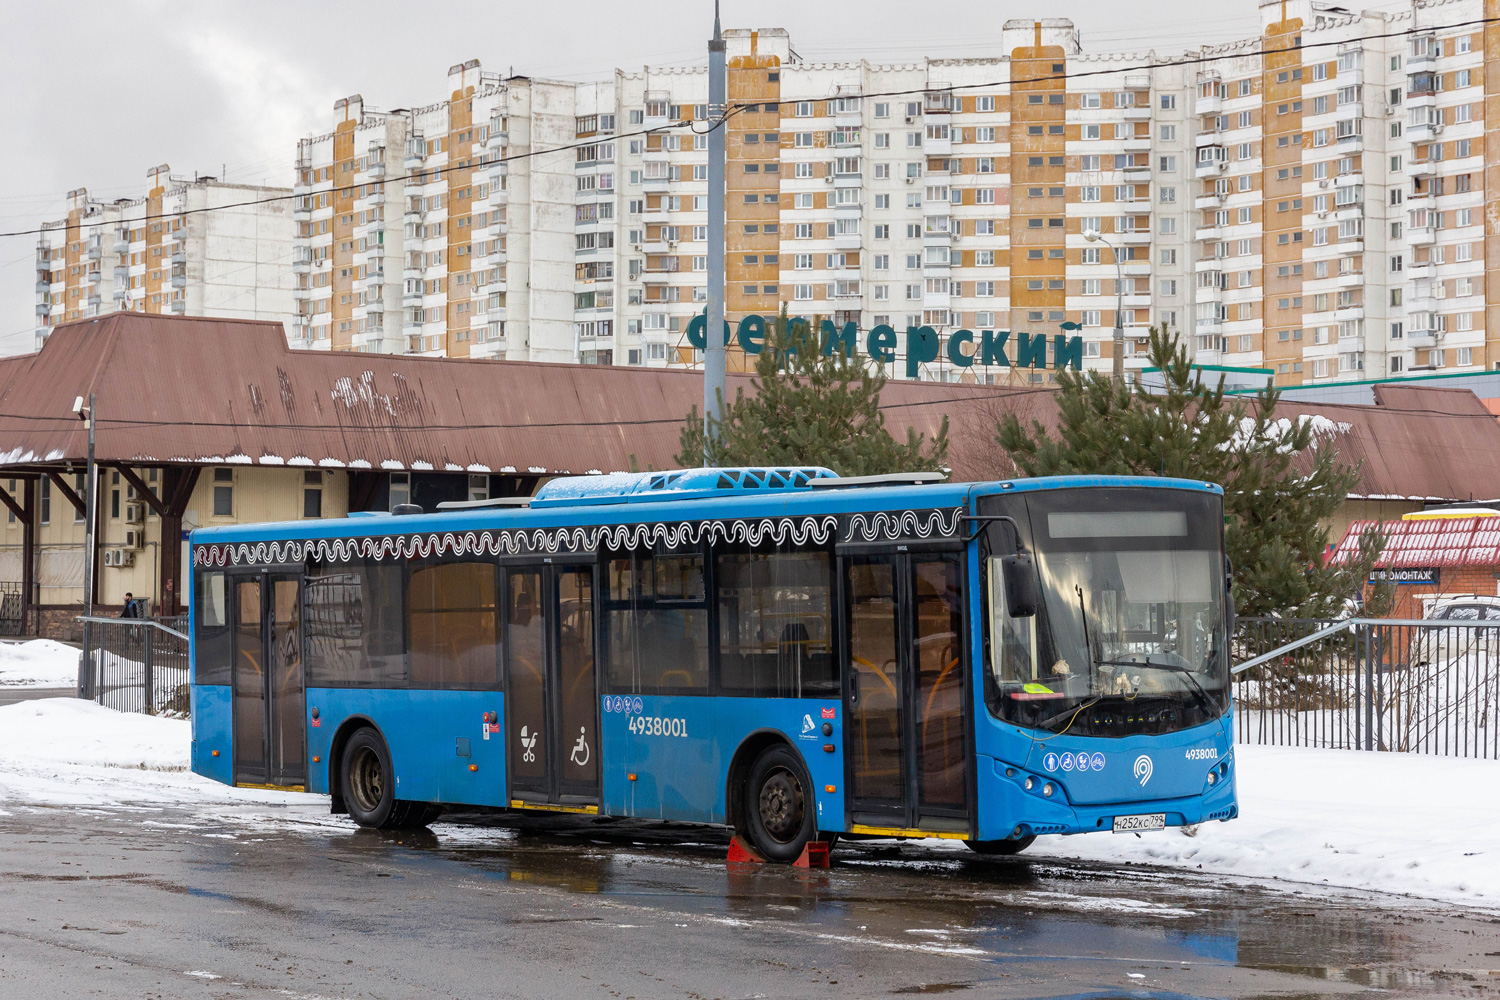 Μόσχα, Volgabus-5270.02 # 4938001